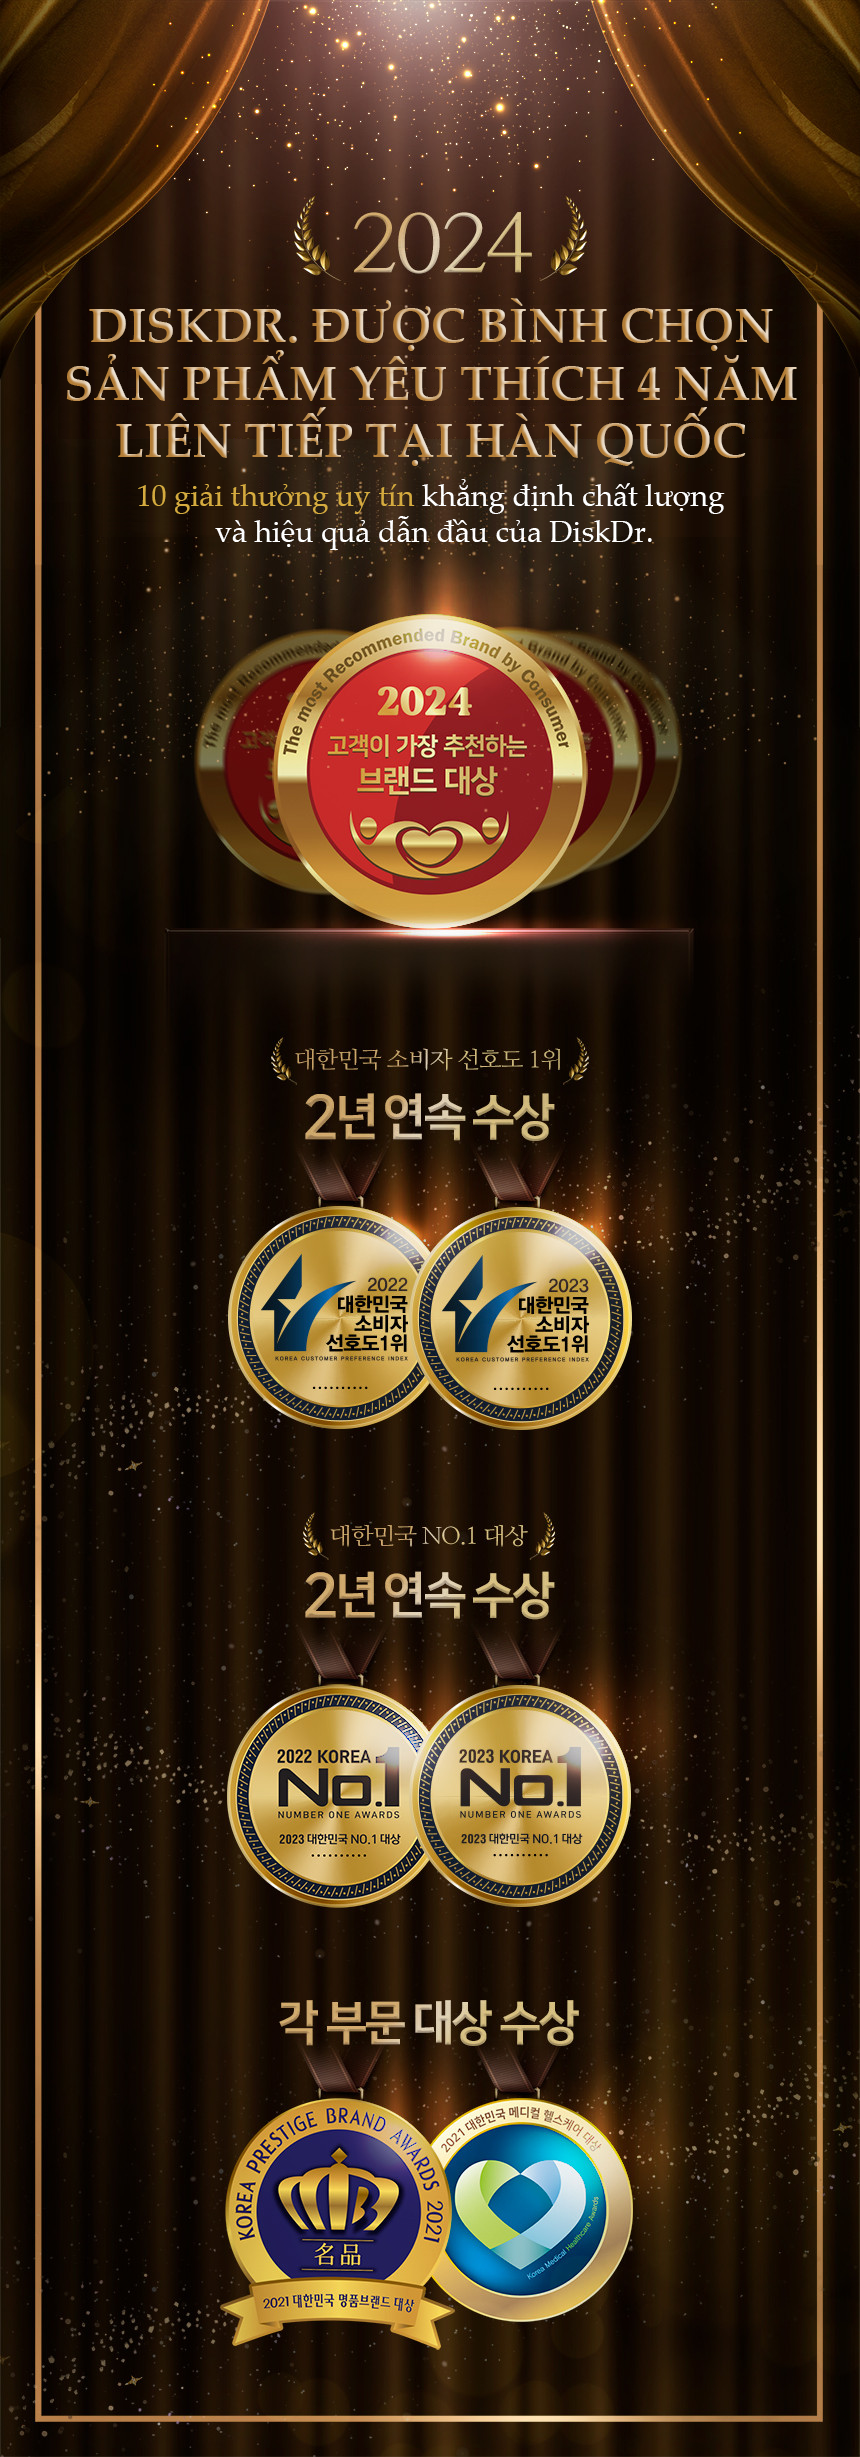 DiskDr dành được rất nhiều giải thưởng uy tín do người tiêu dùng bình chọn tại Hàn Quốc